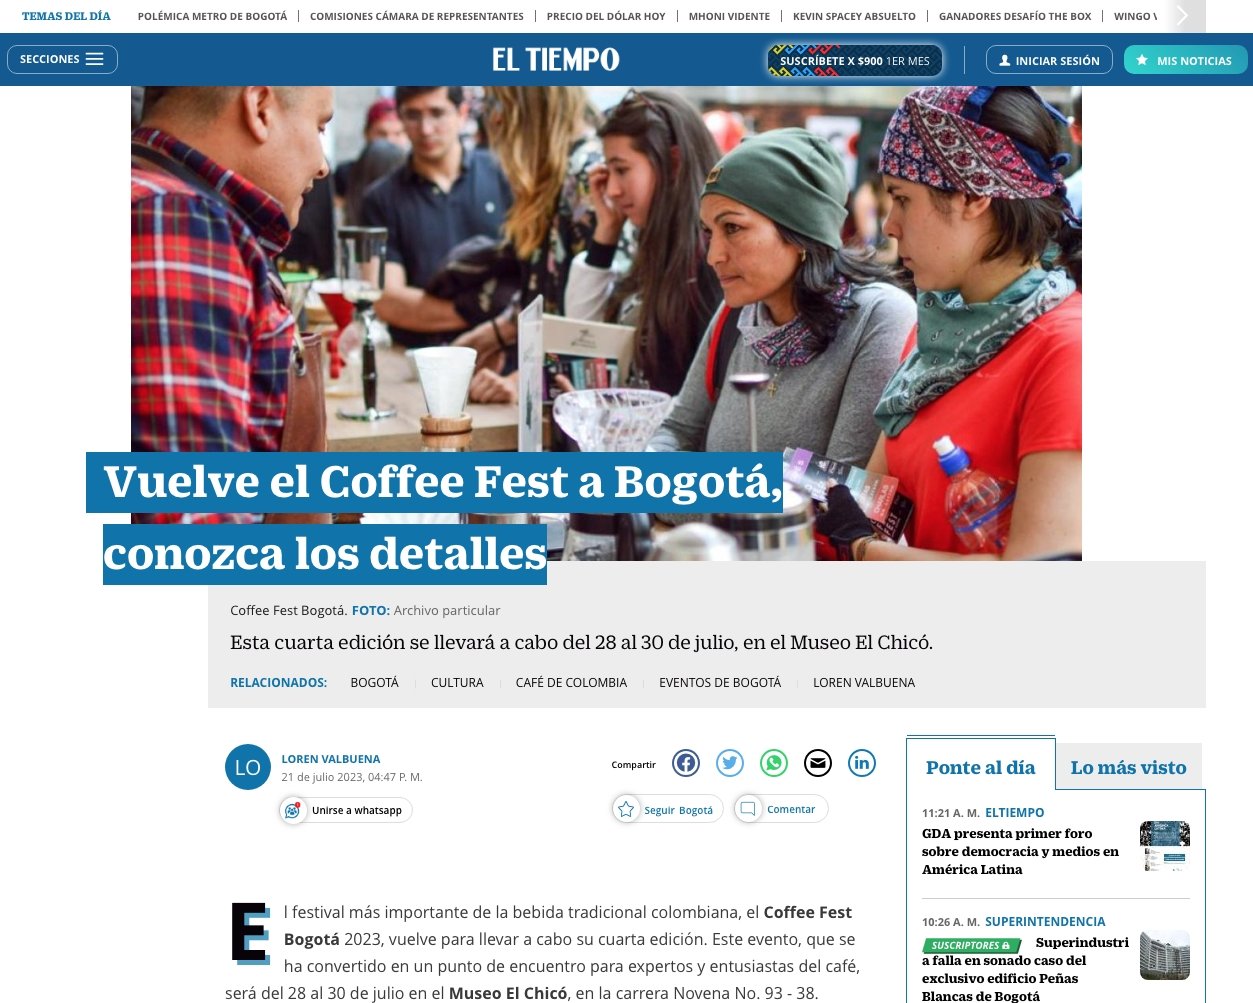 eltiempo.com: Vuelve el Coffee Fest a Bogotá, conozca los detalles